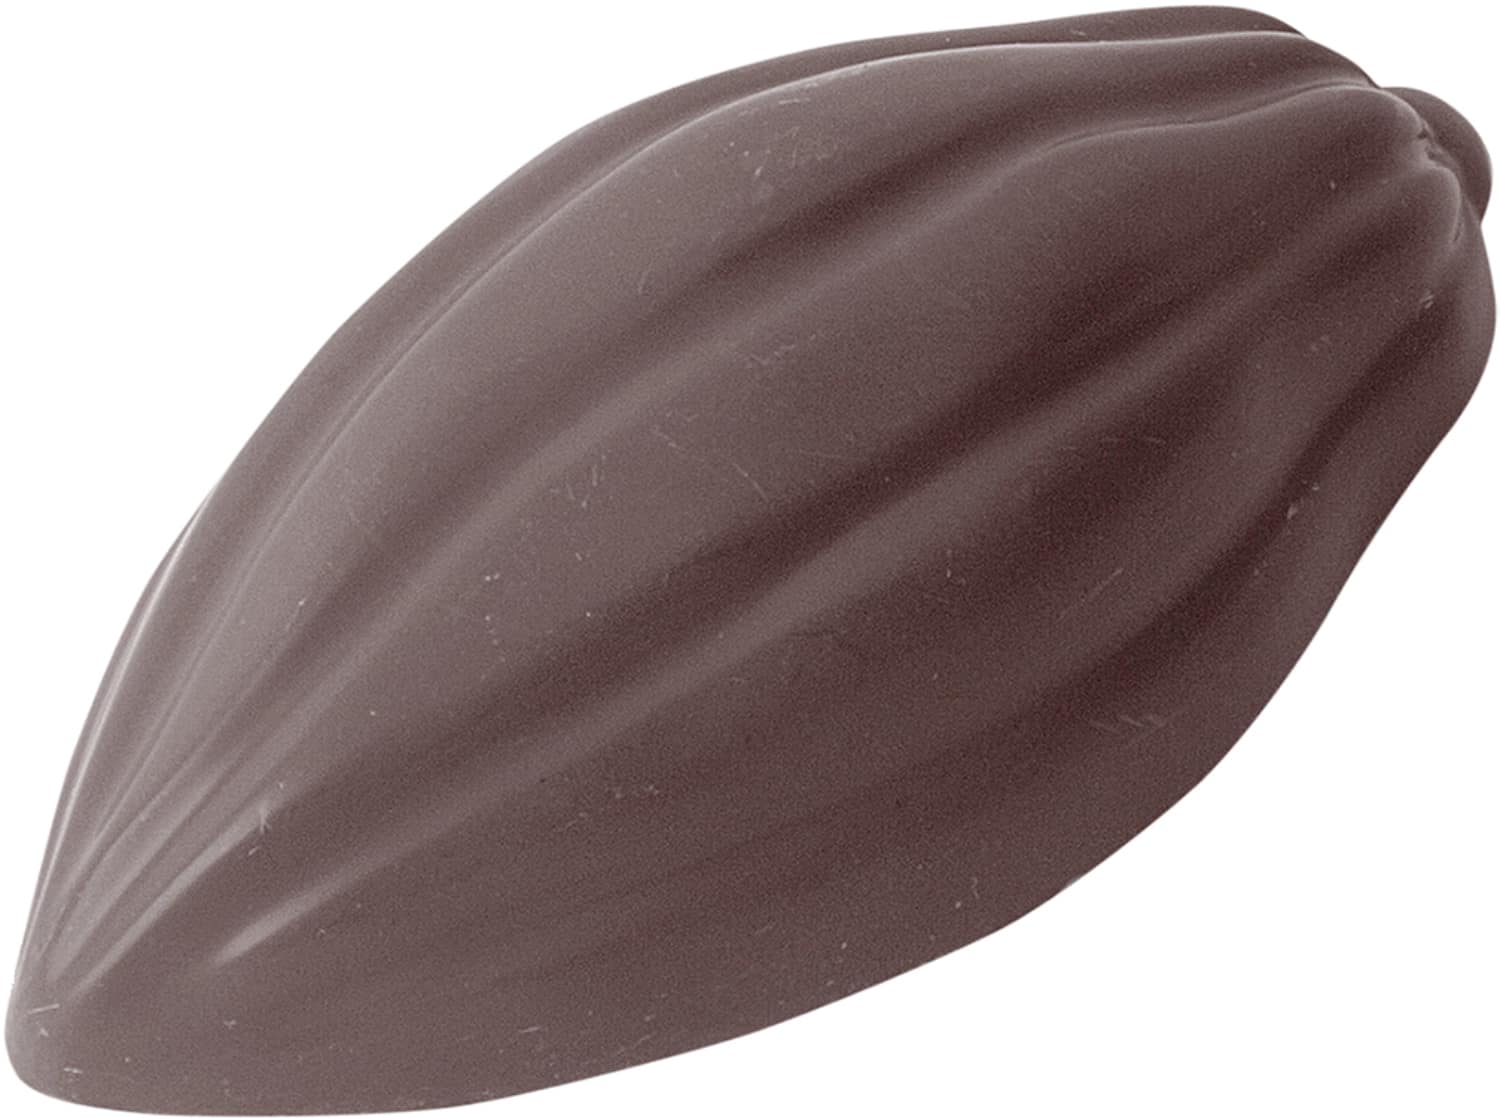 Schokoladenform "Kakaobohne" 422370